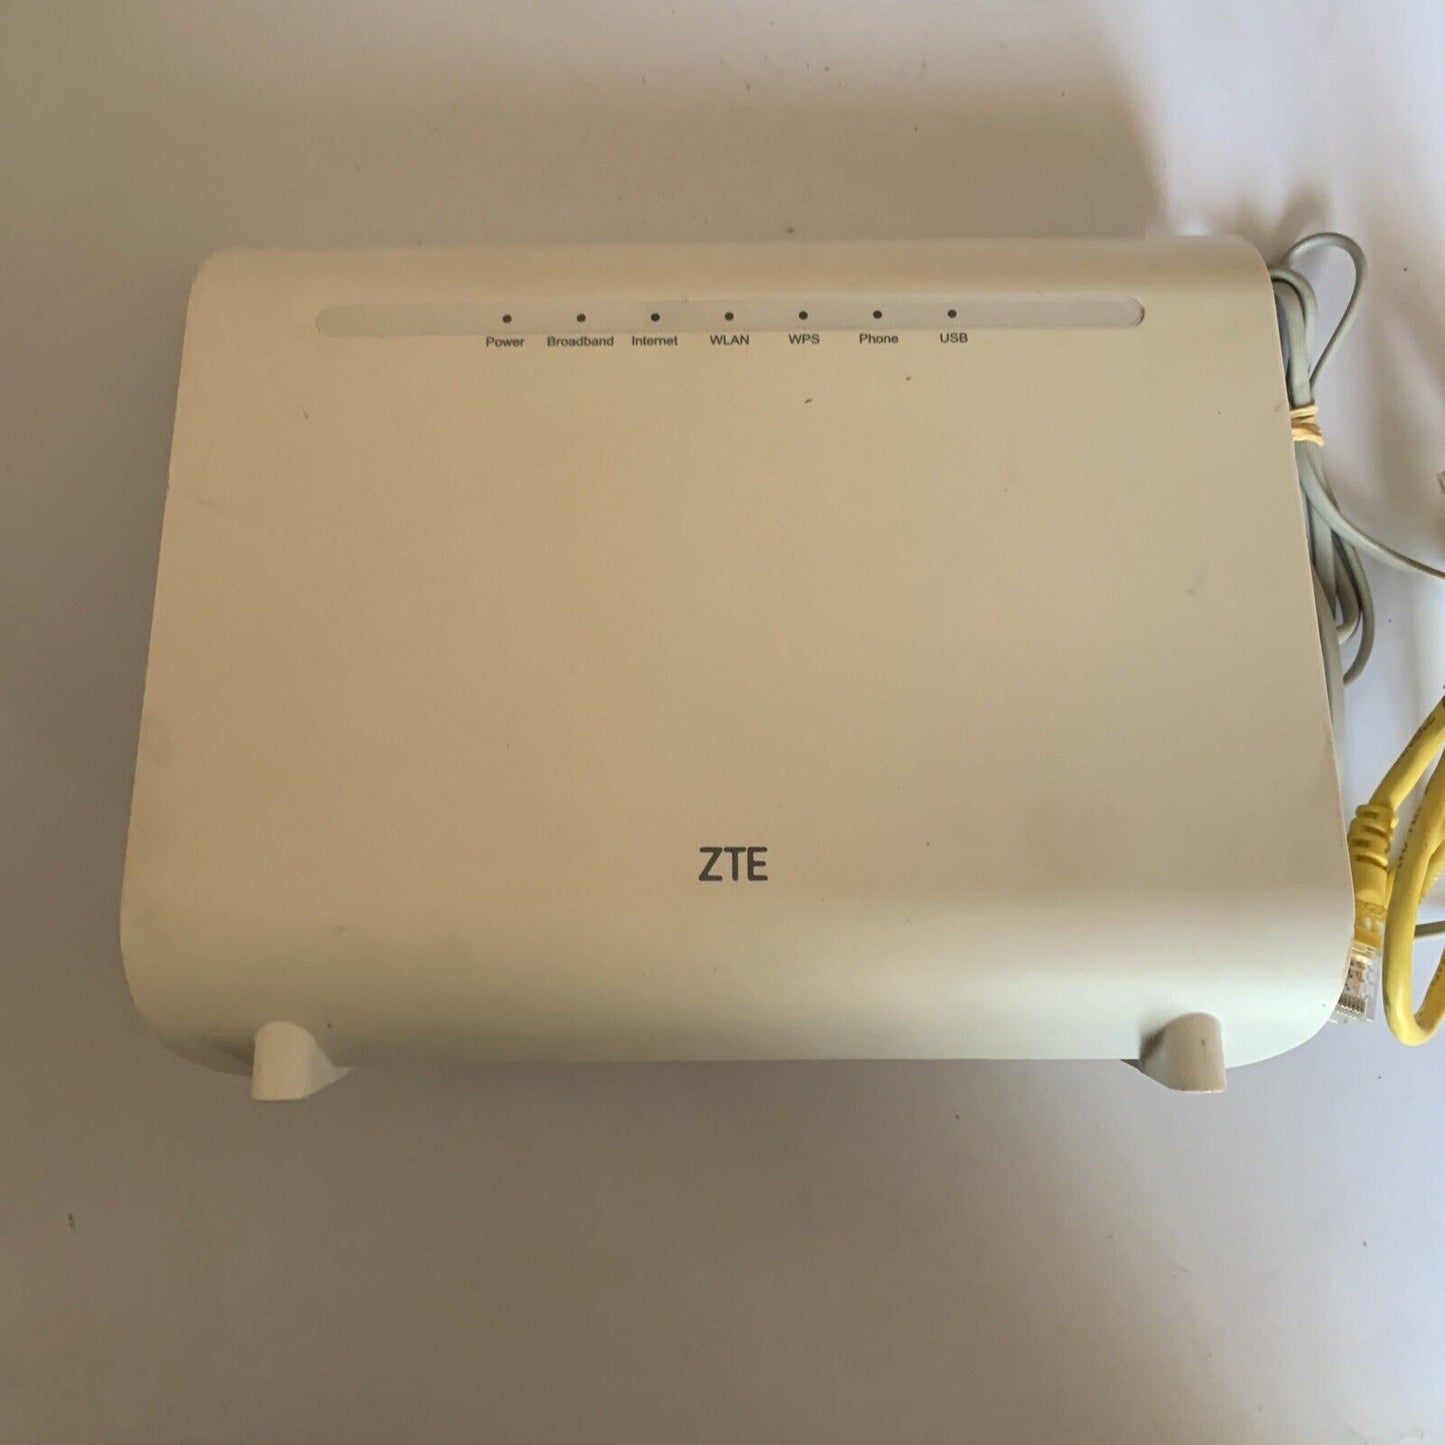 ZTE Home Gateway ZXHN H268A VoIP Wireless WiFi Router